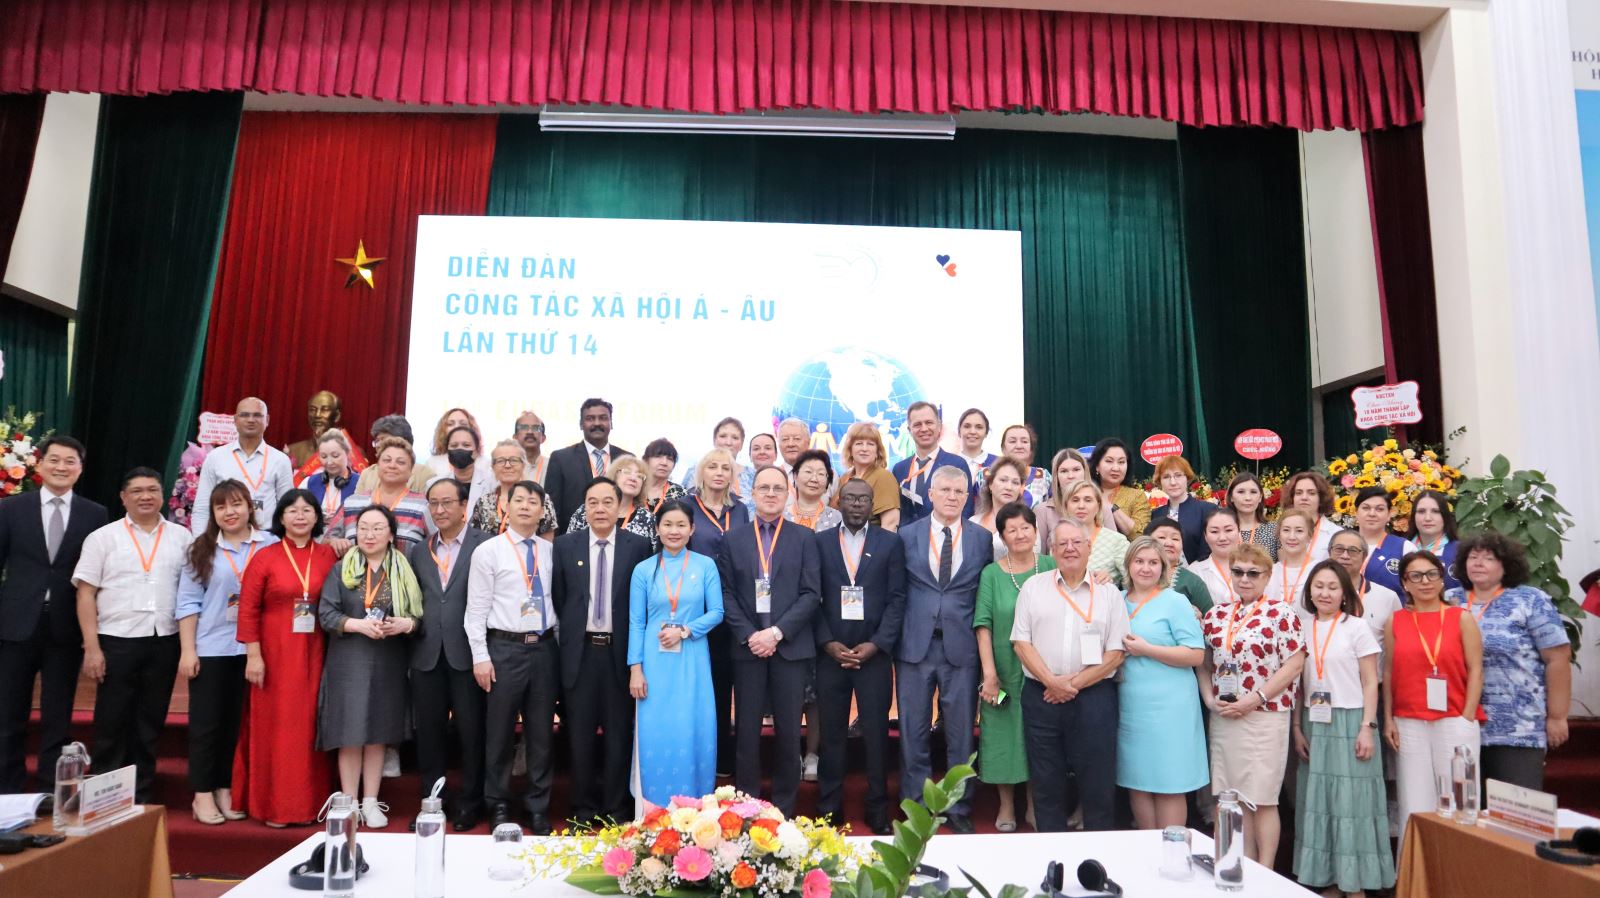 Học viện Phụ nữ Việt Nam tổ chức khai mạc Diễn đàn Công tác xã hội Á - Âu và Hội thảo khoa học quốc tế